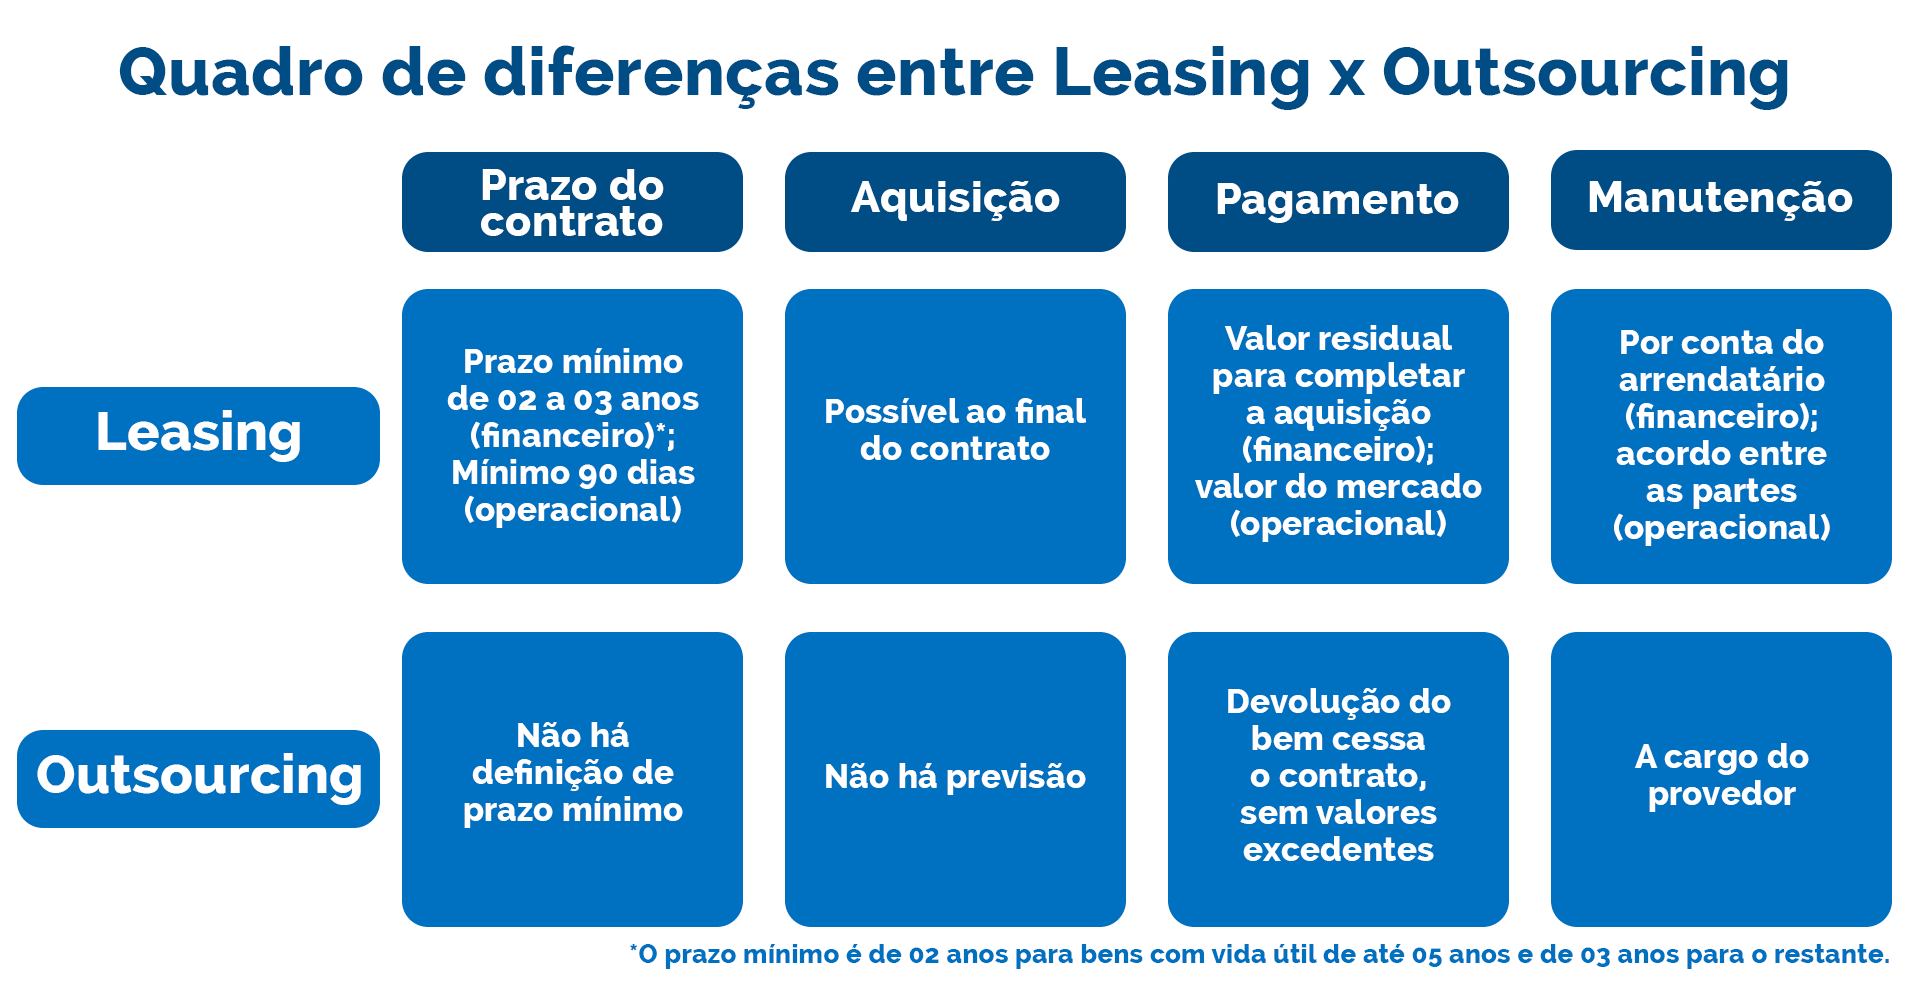 Tabela demonstrando as diferenças entre leasing e outsourcing, entre os prazos do contrato, a aquisição, pagamento e manutenção.